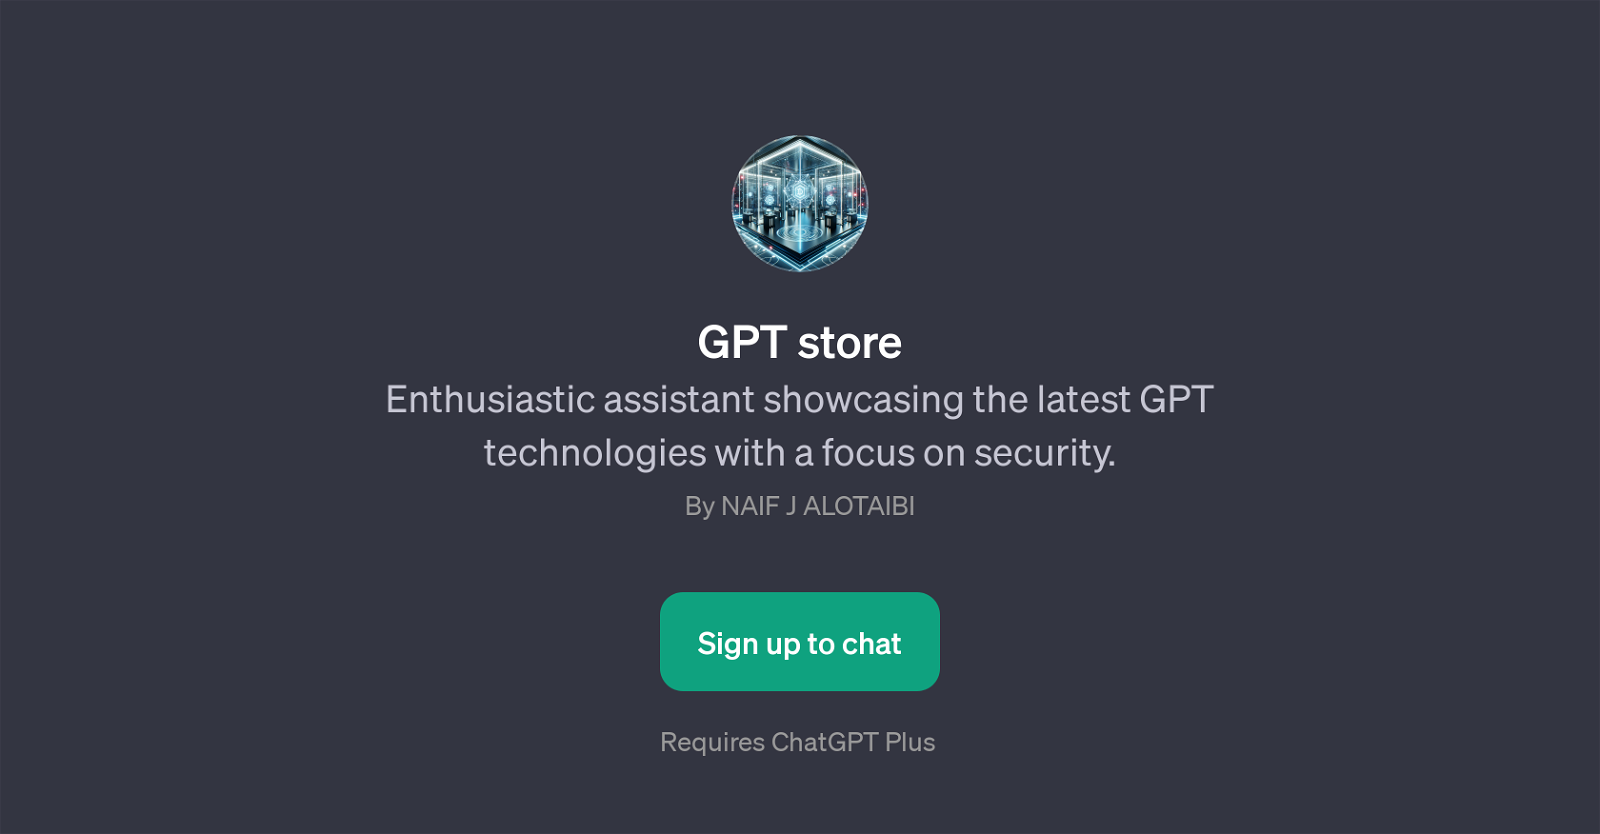 GPT Store website